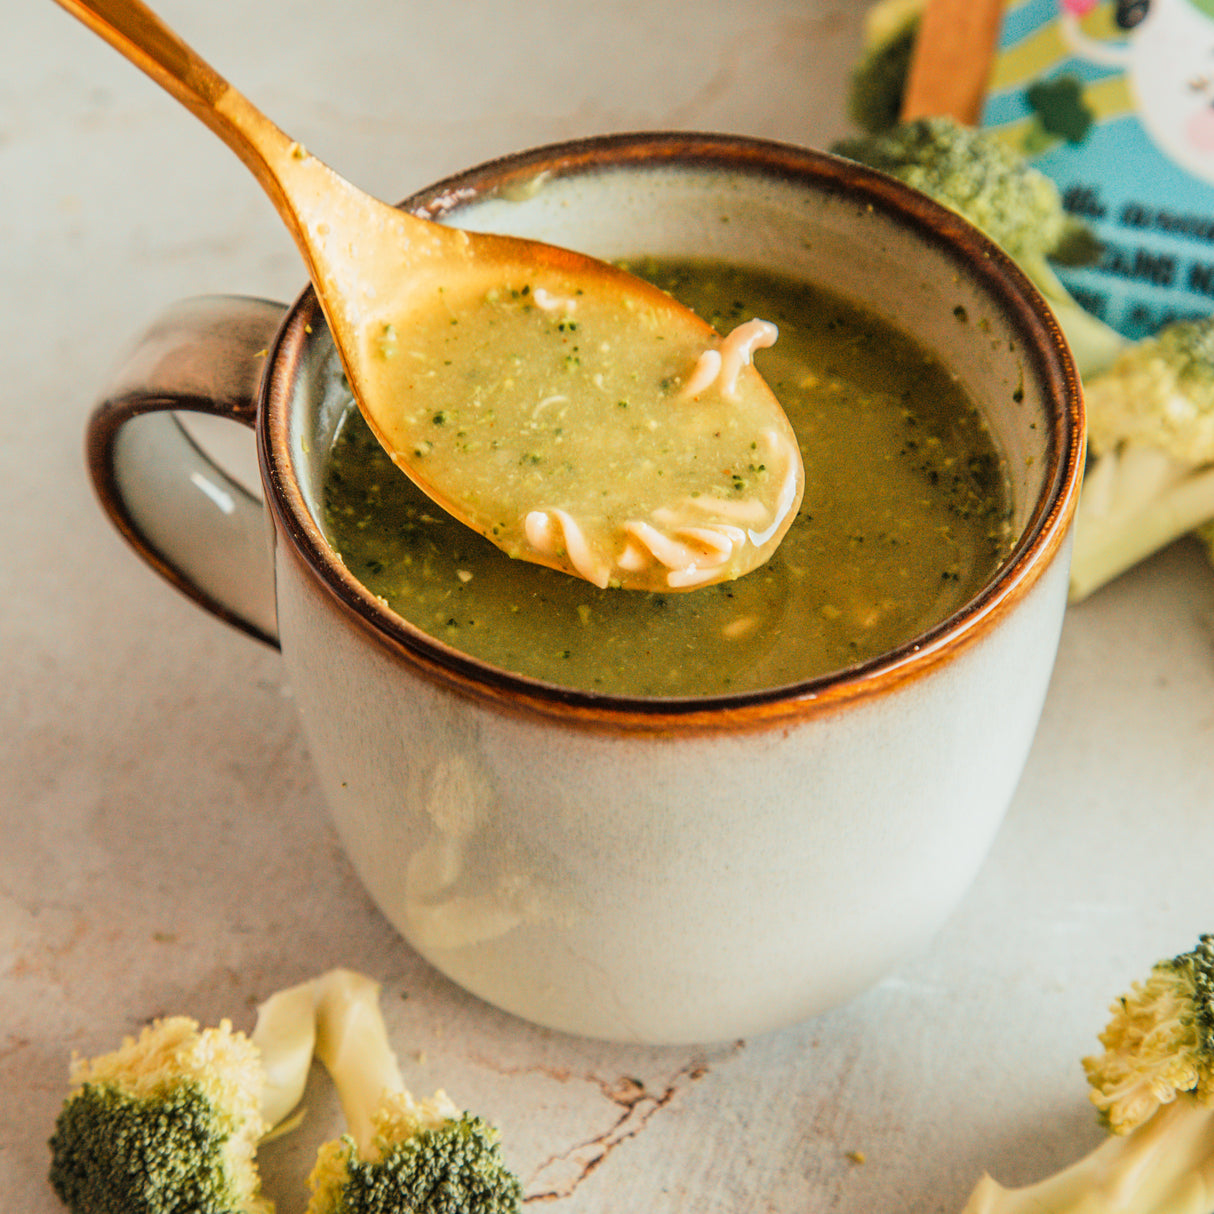 Cupster broccoli istantanei - zuppa cremosa di cavolo riccio 29g